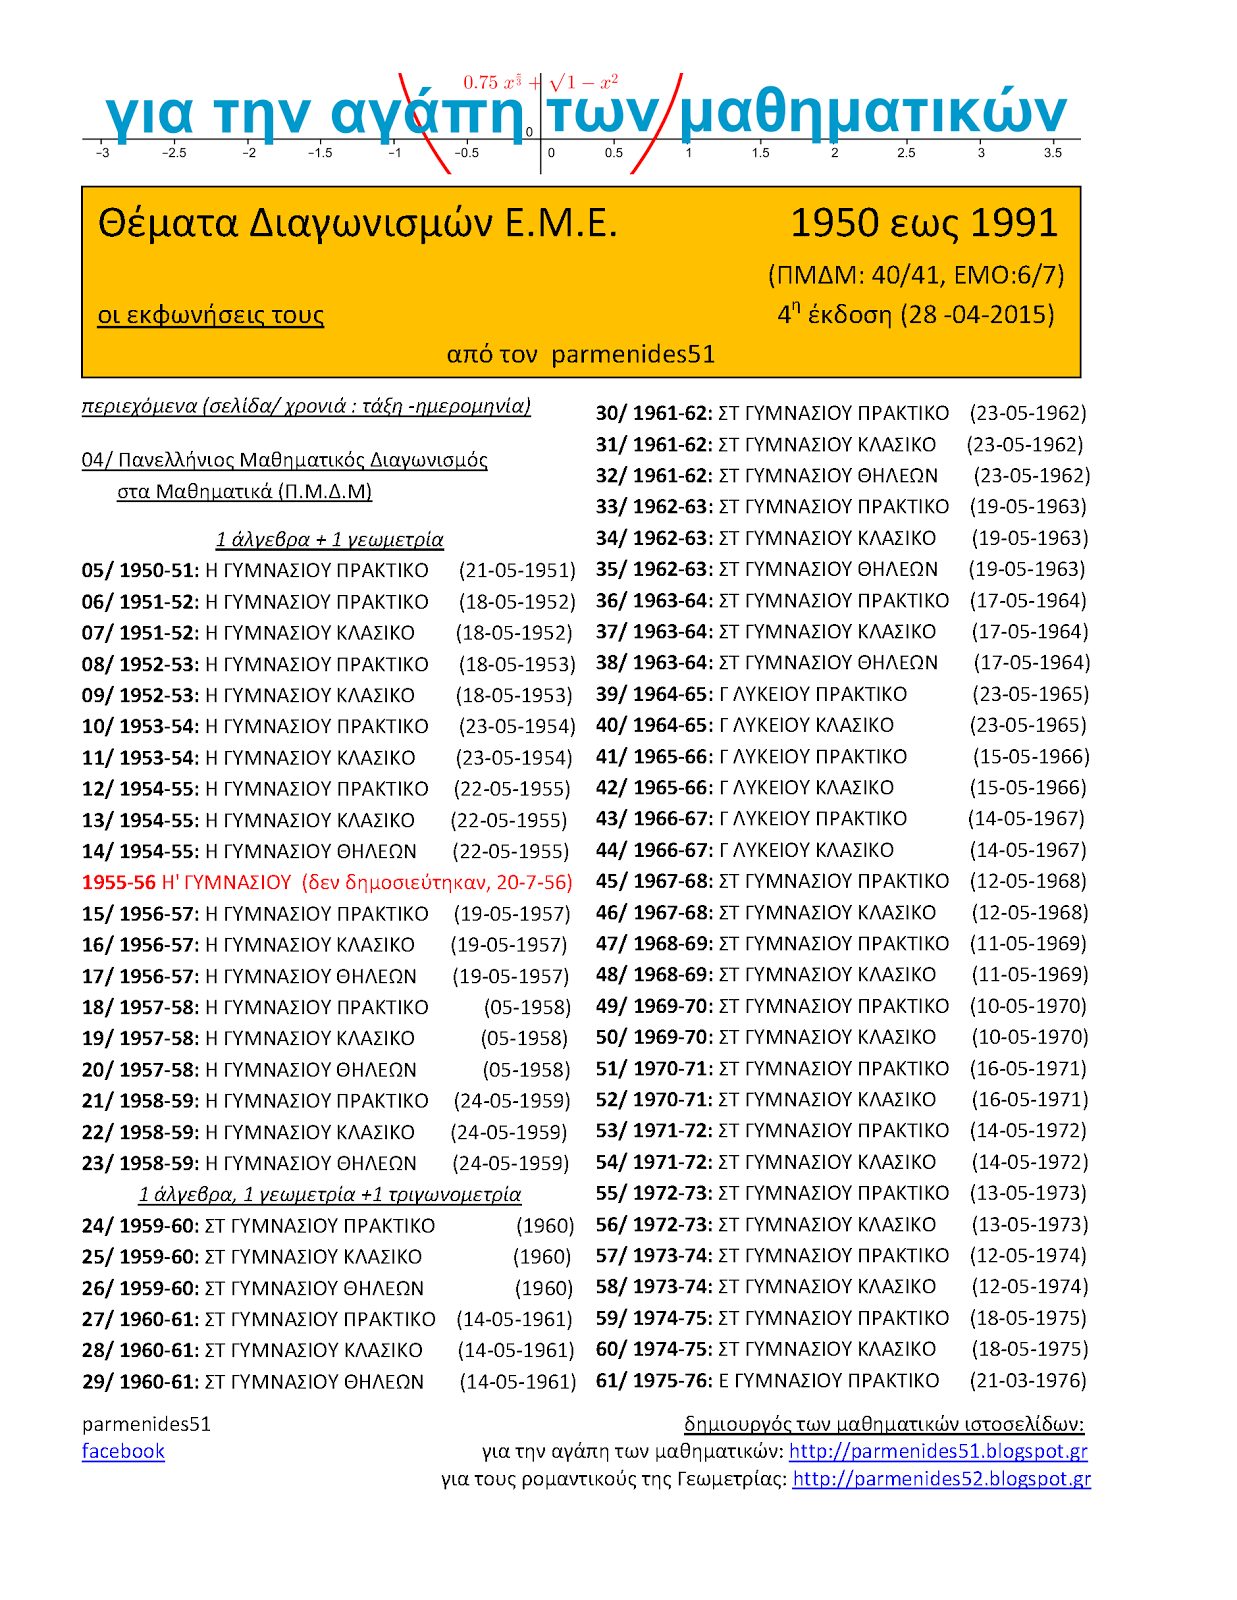 θέματα ελληνικών μαθηματικών διαγωνισμών 1933-2017 <br>+ κατάλληλο υλικό προετοιμασίας